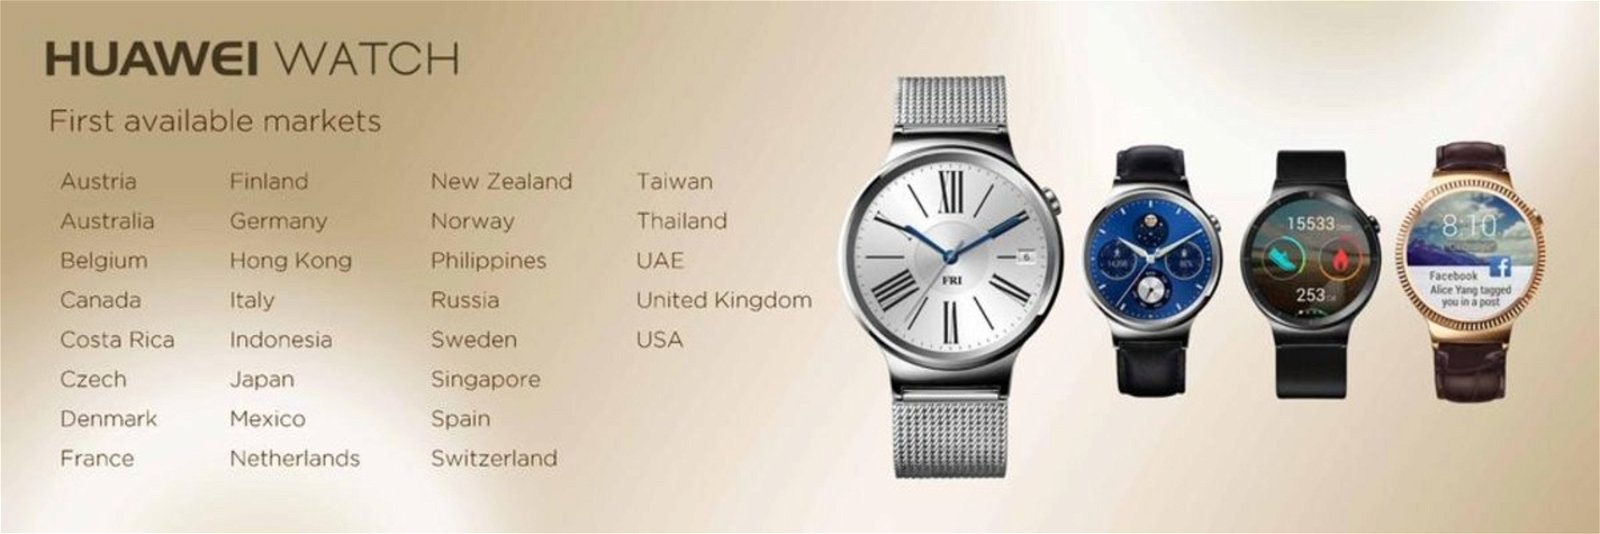 huawei watch disponibilidad